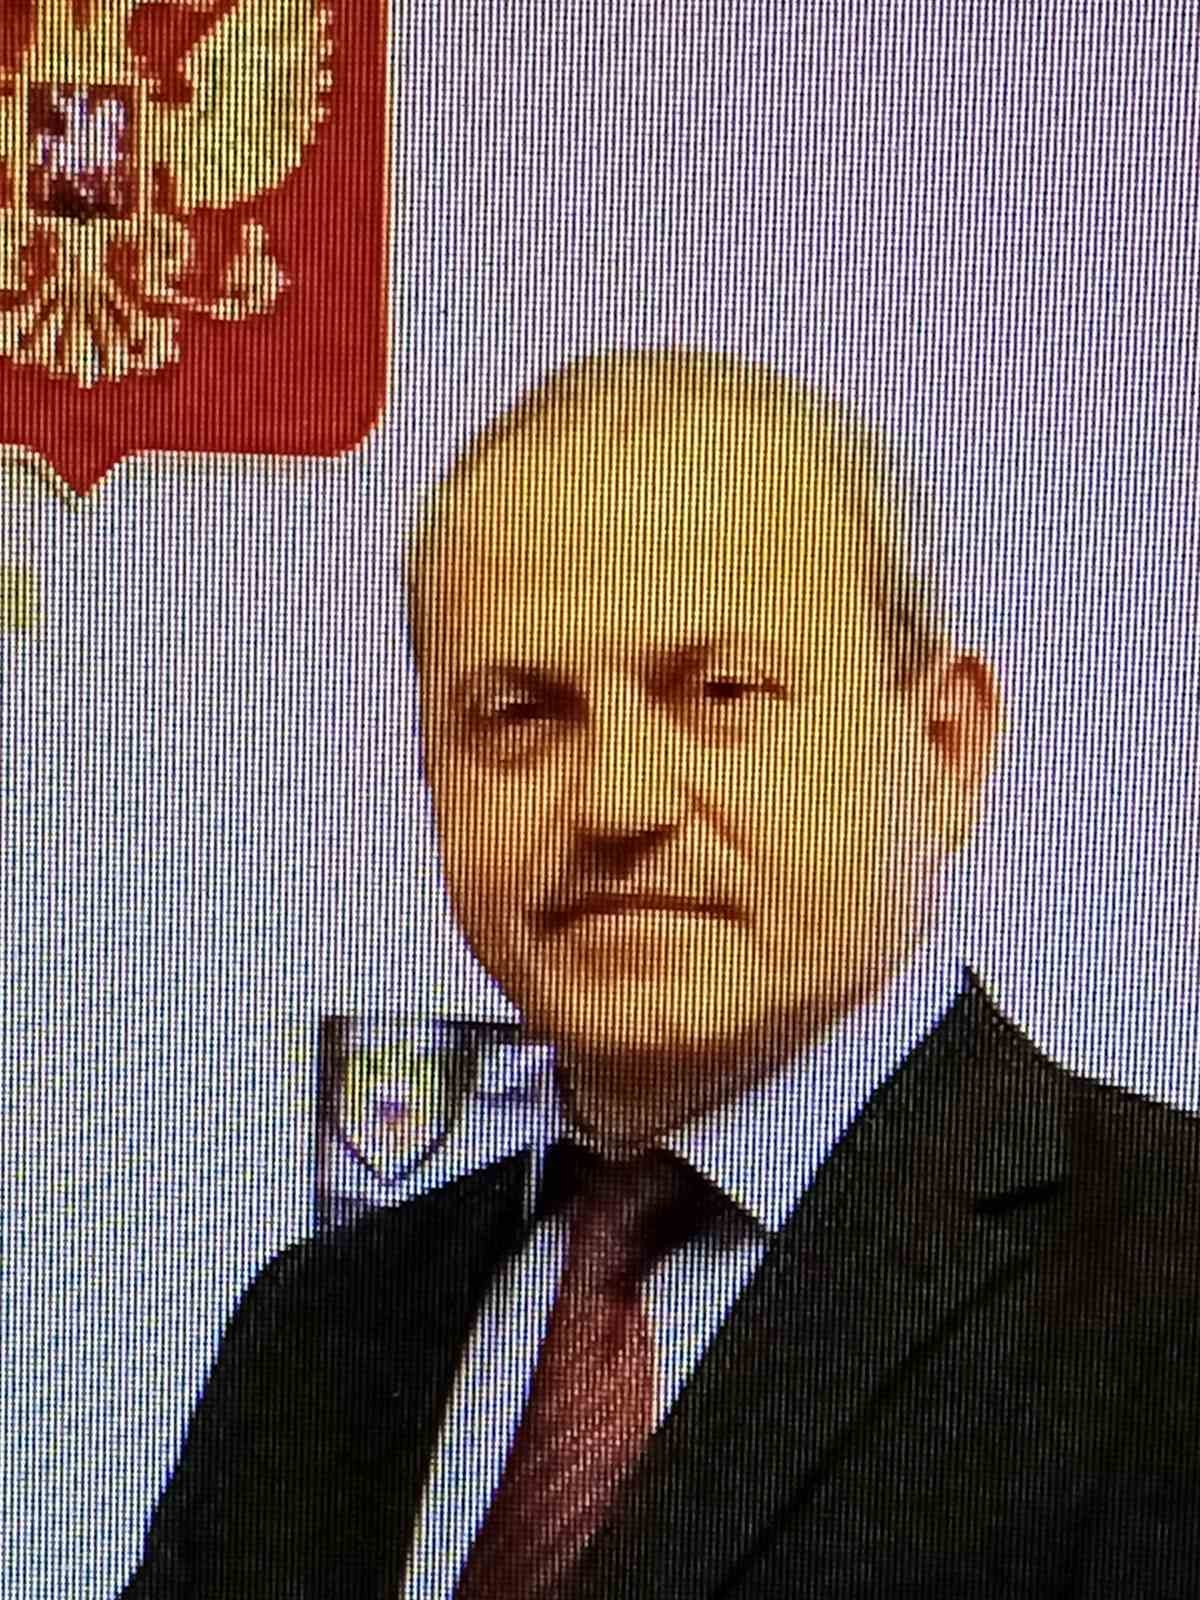 Хмельницкий Алексей Михайлович